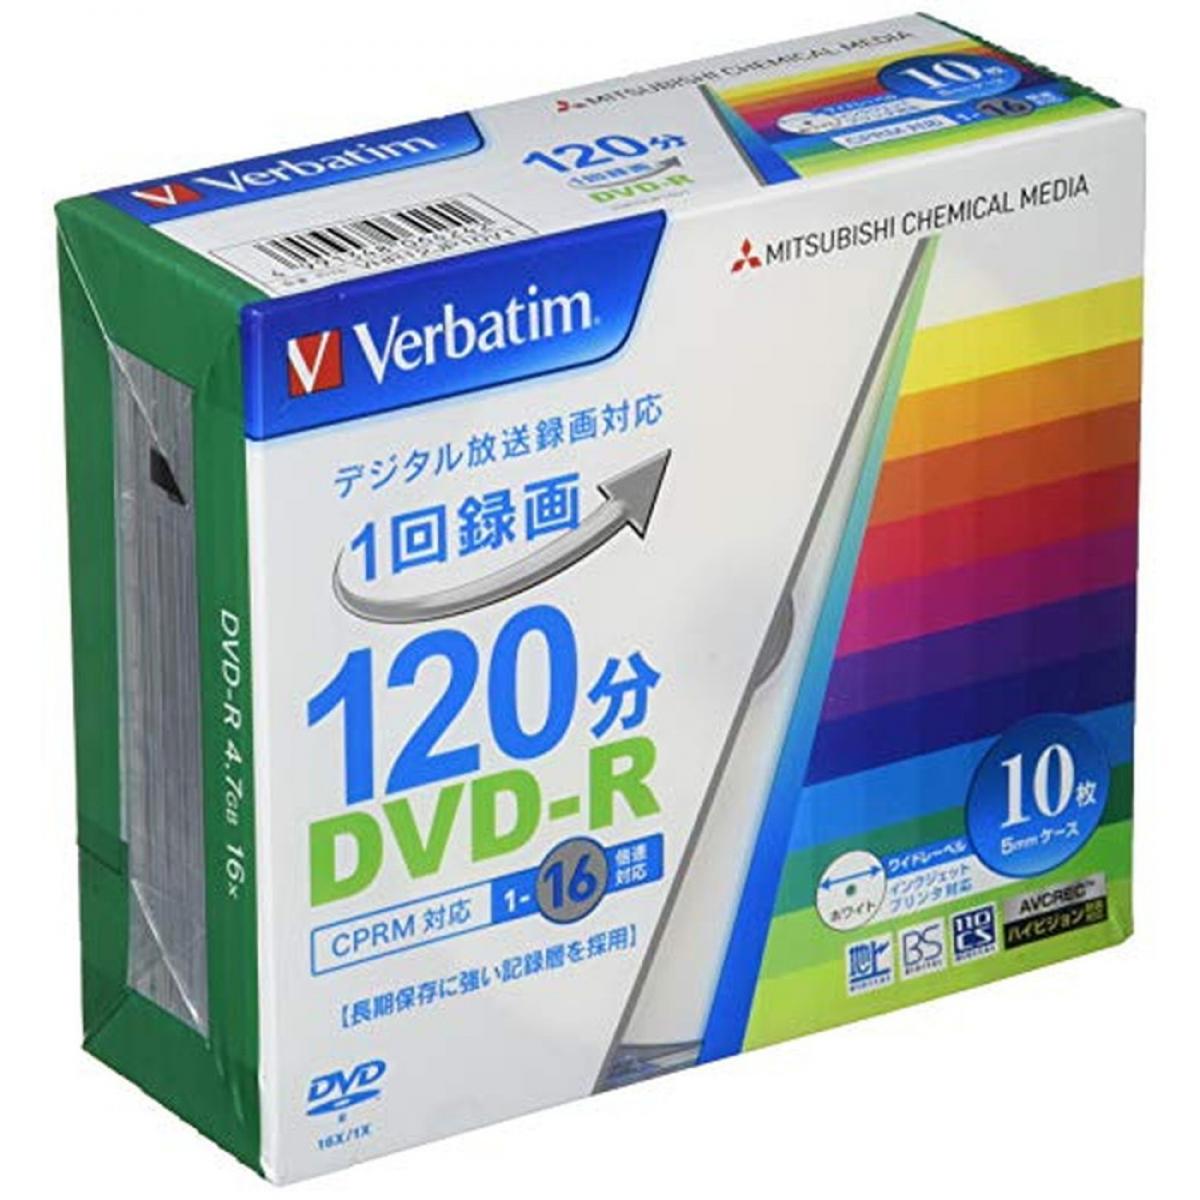 三菱ケミカルメディア Verbatim 1回録画用DVD-R(CPRM) VHR12JP10V1 (片面1層/1-16倍速/10枚)